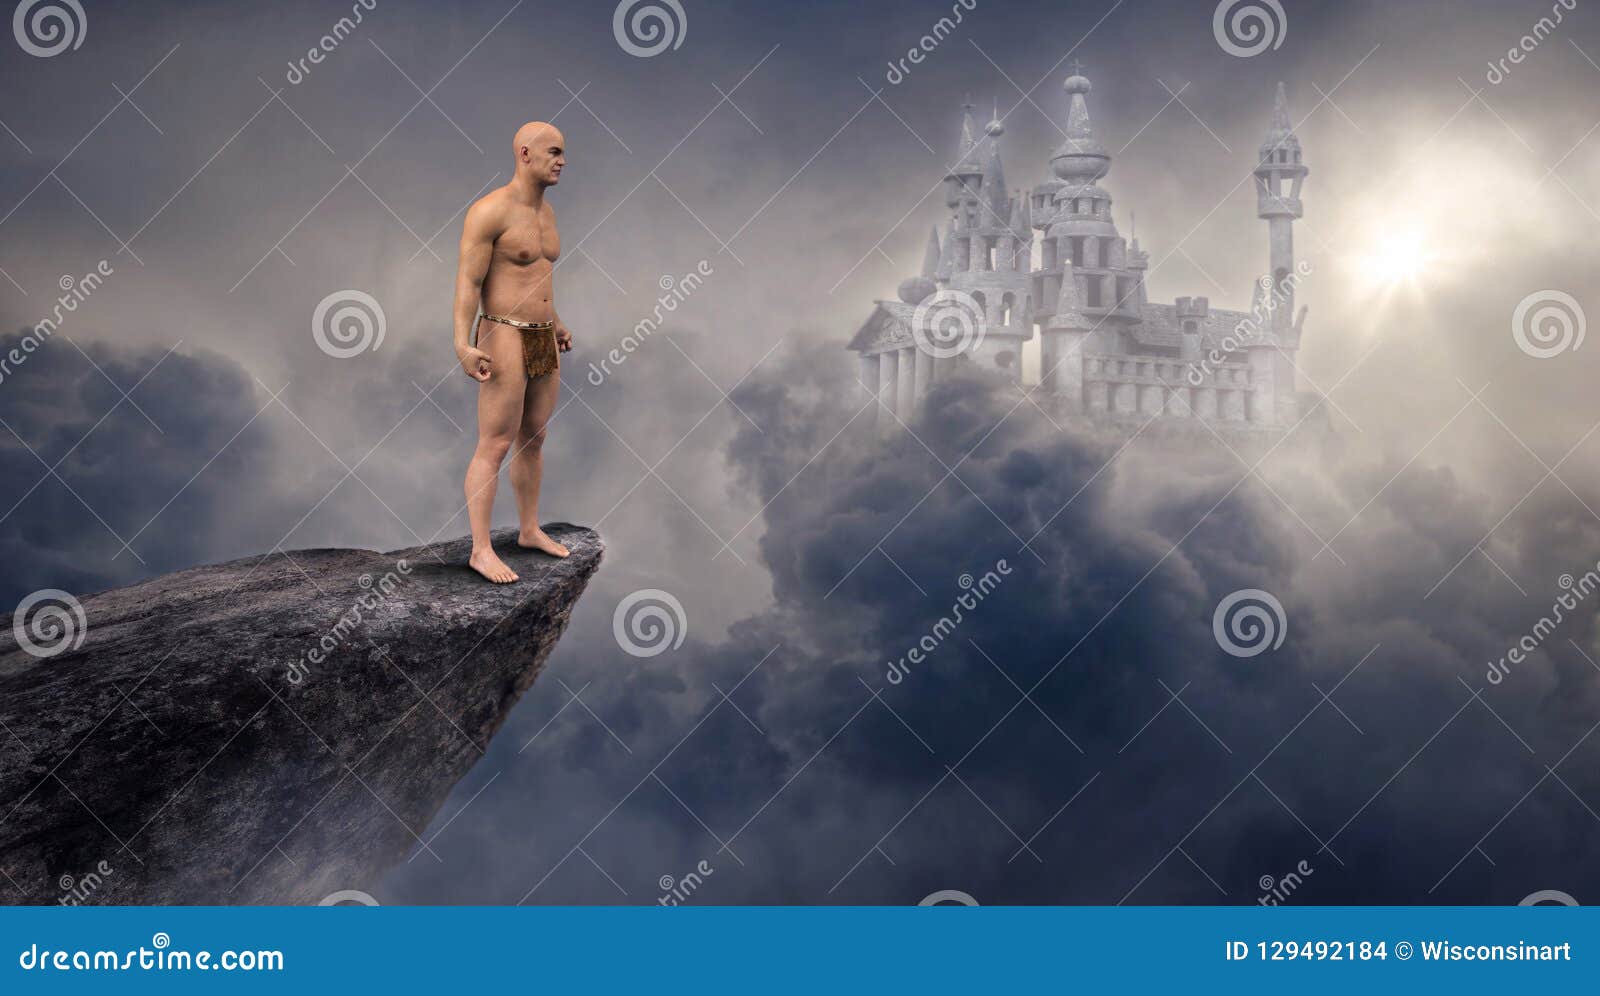 fantasy science fiction castle, cliff, clouds